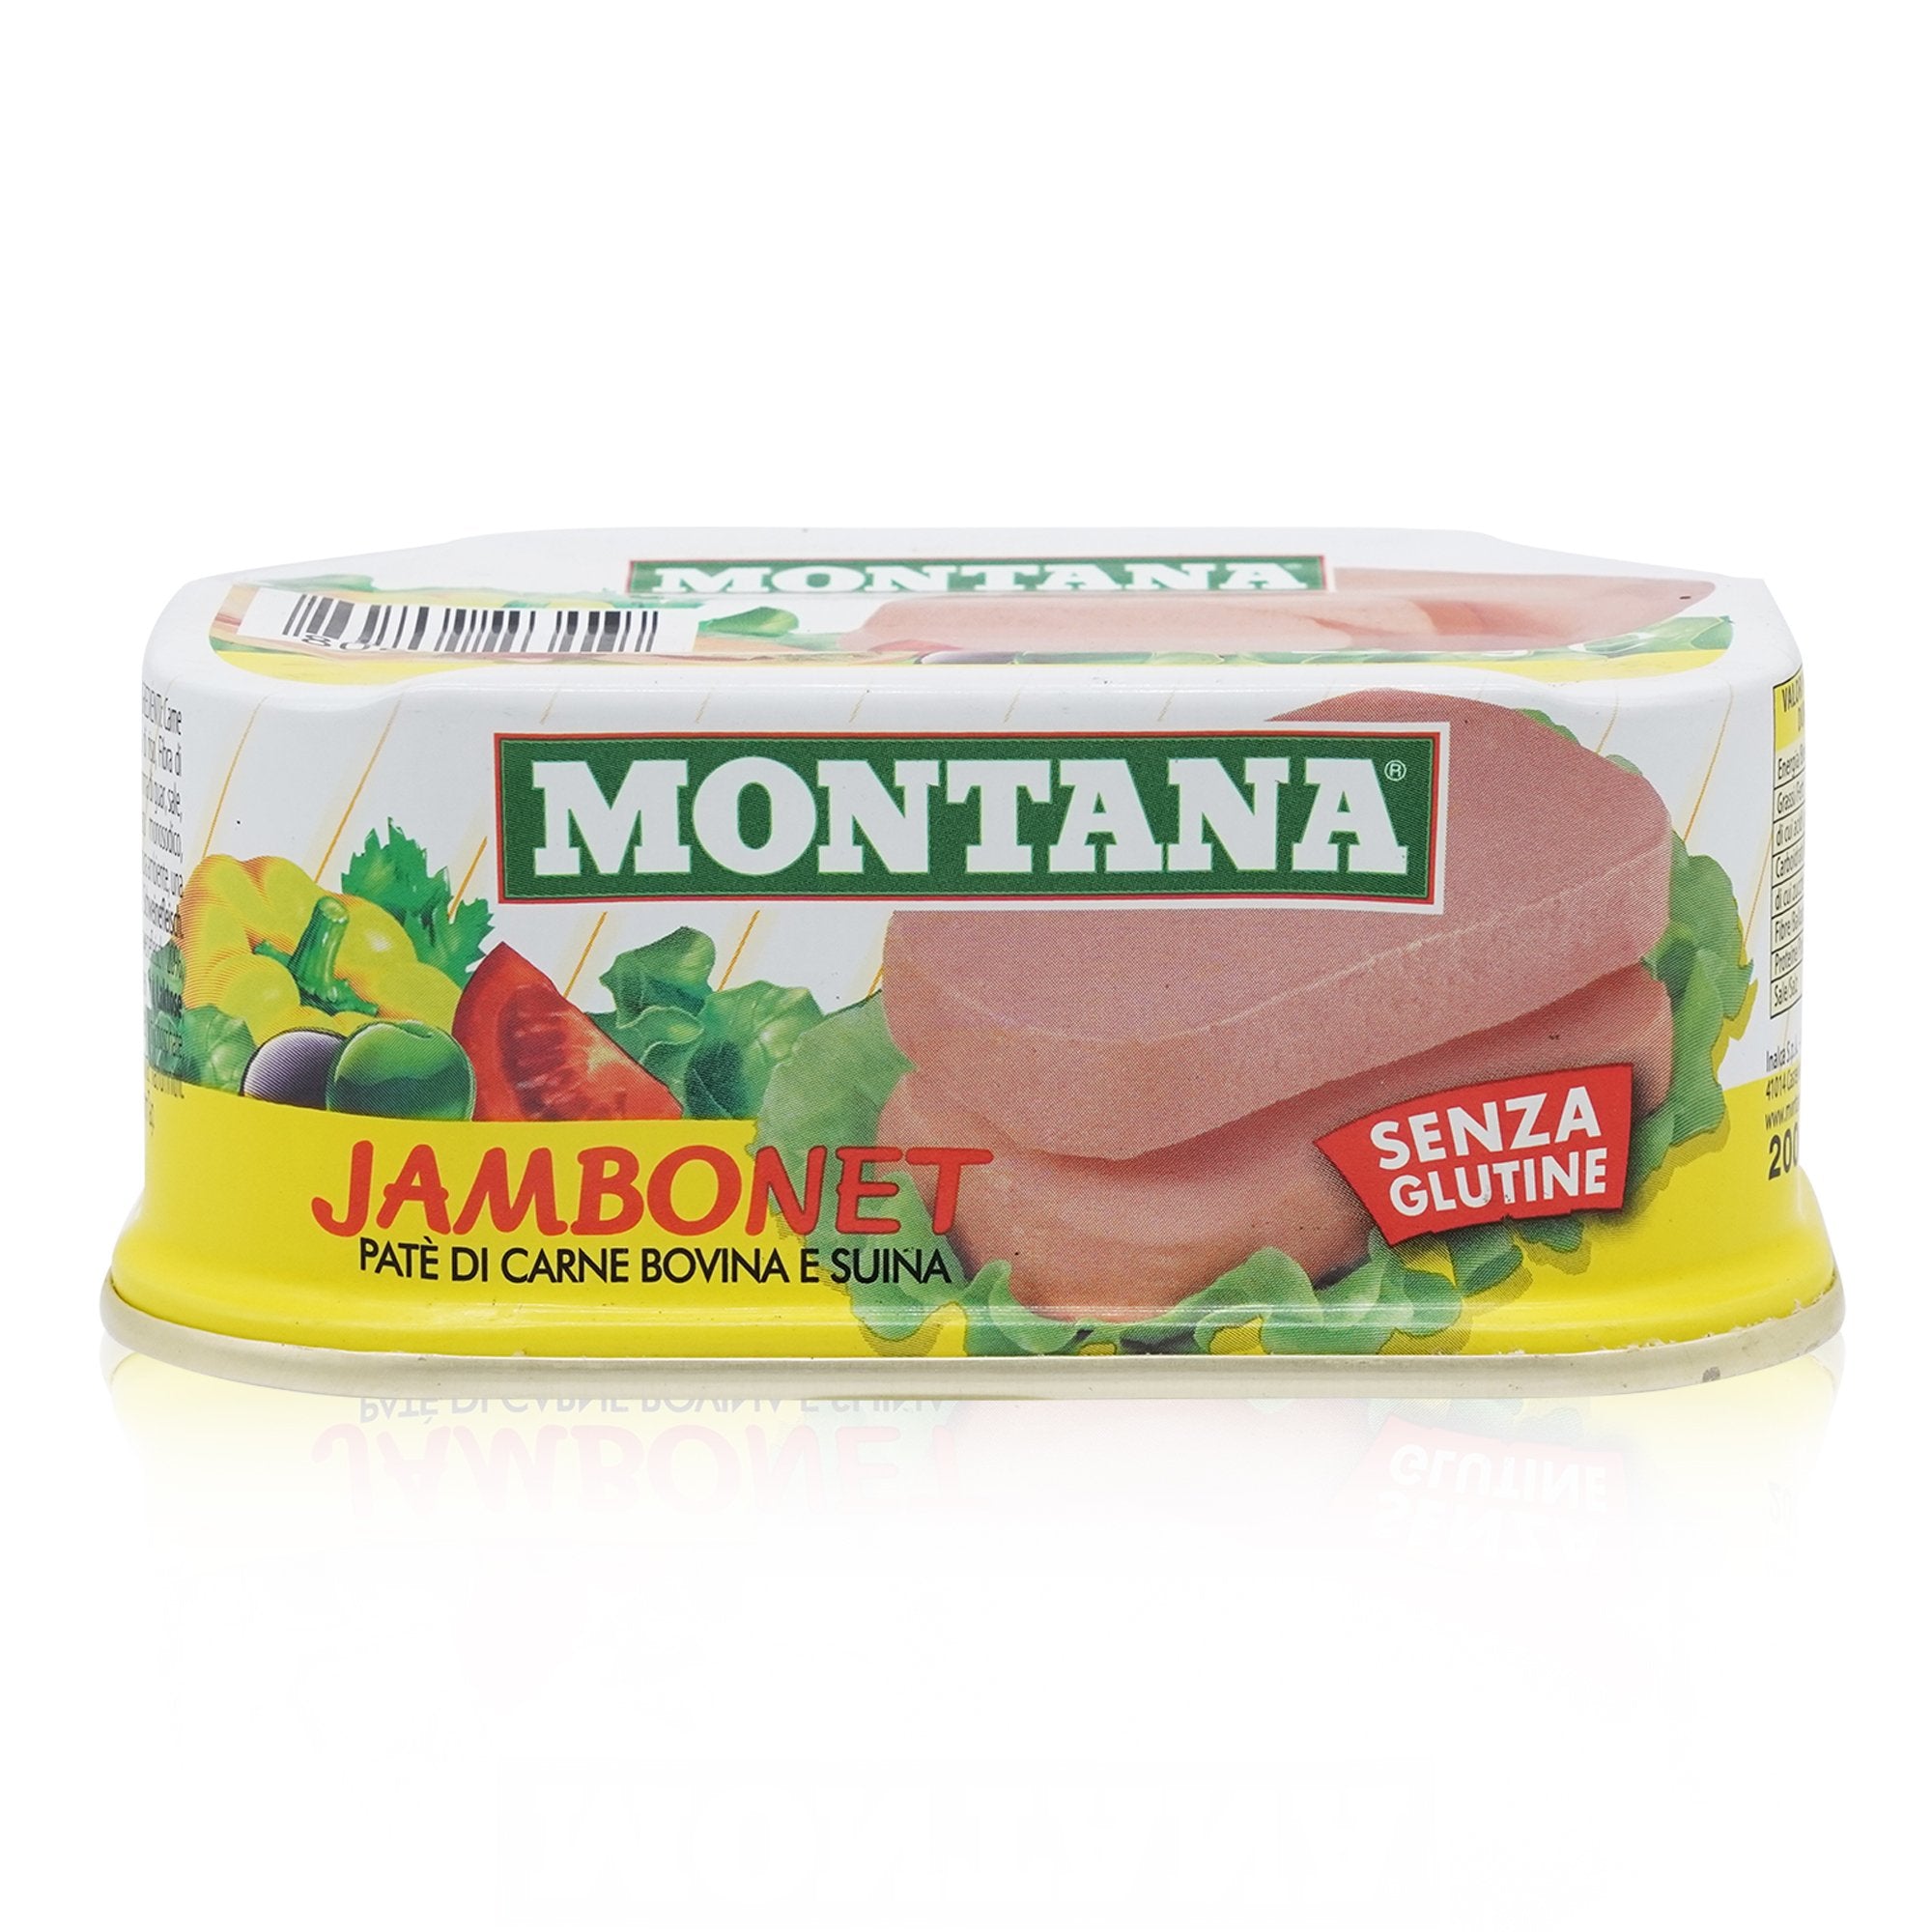 MONTANA Jambonet Paté di carne – Jambonet Fleischpastete - 0,200kg - italienisch-einkaufen.de